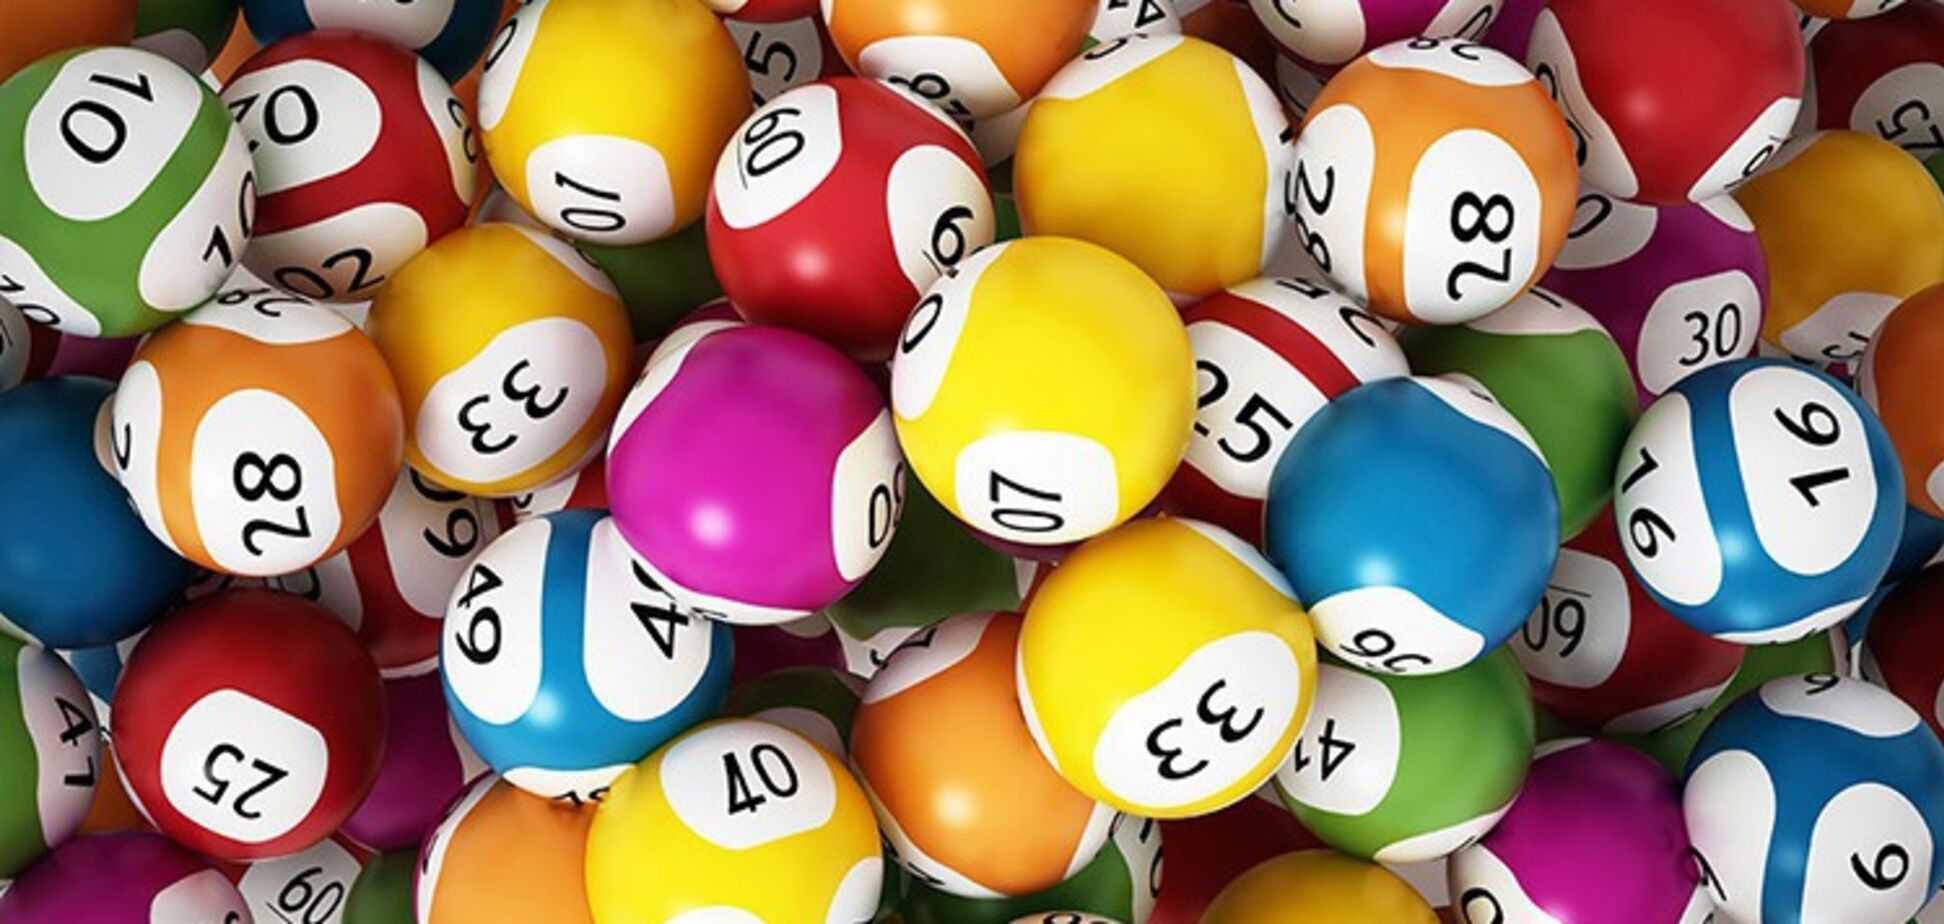 Министр финансов Данилюк: лотерейный рынок нужно легализовать